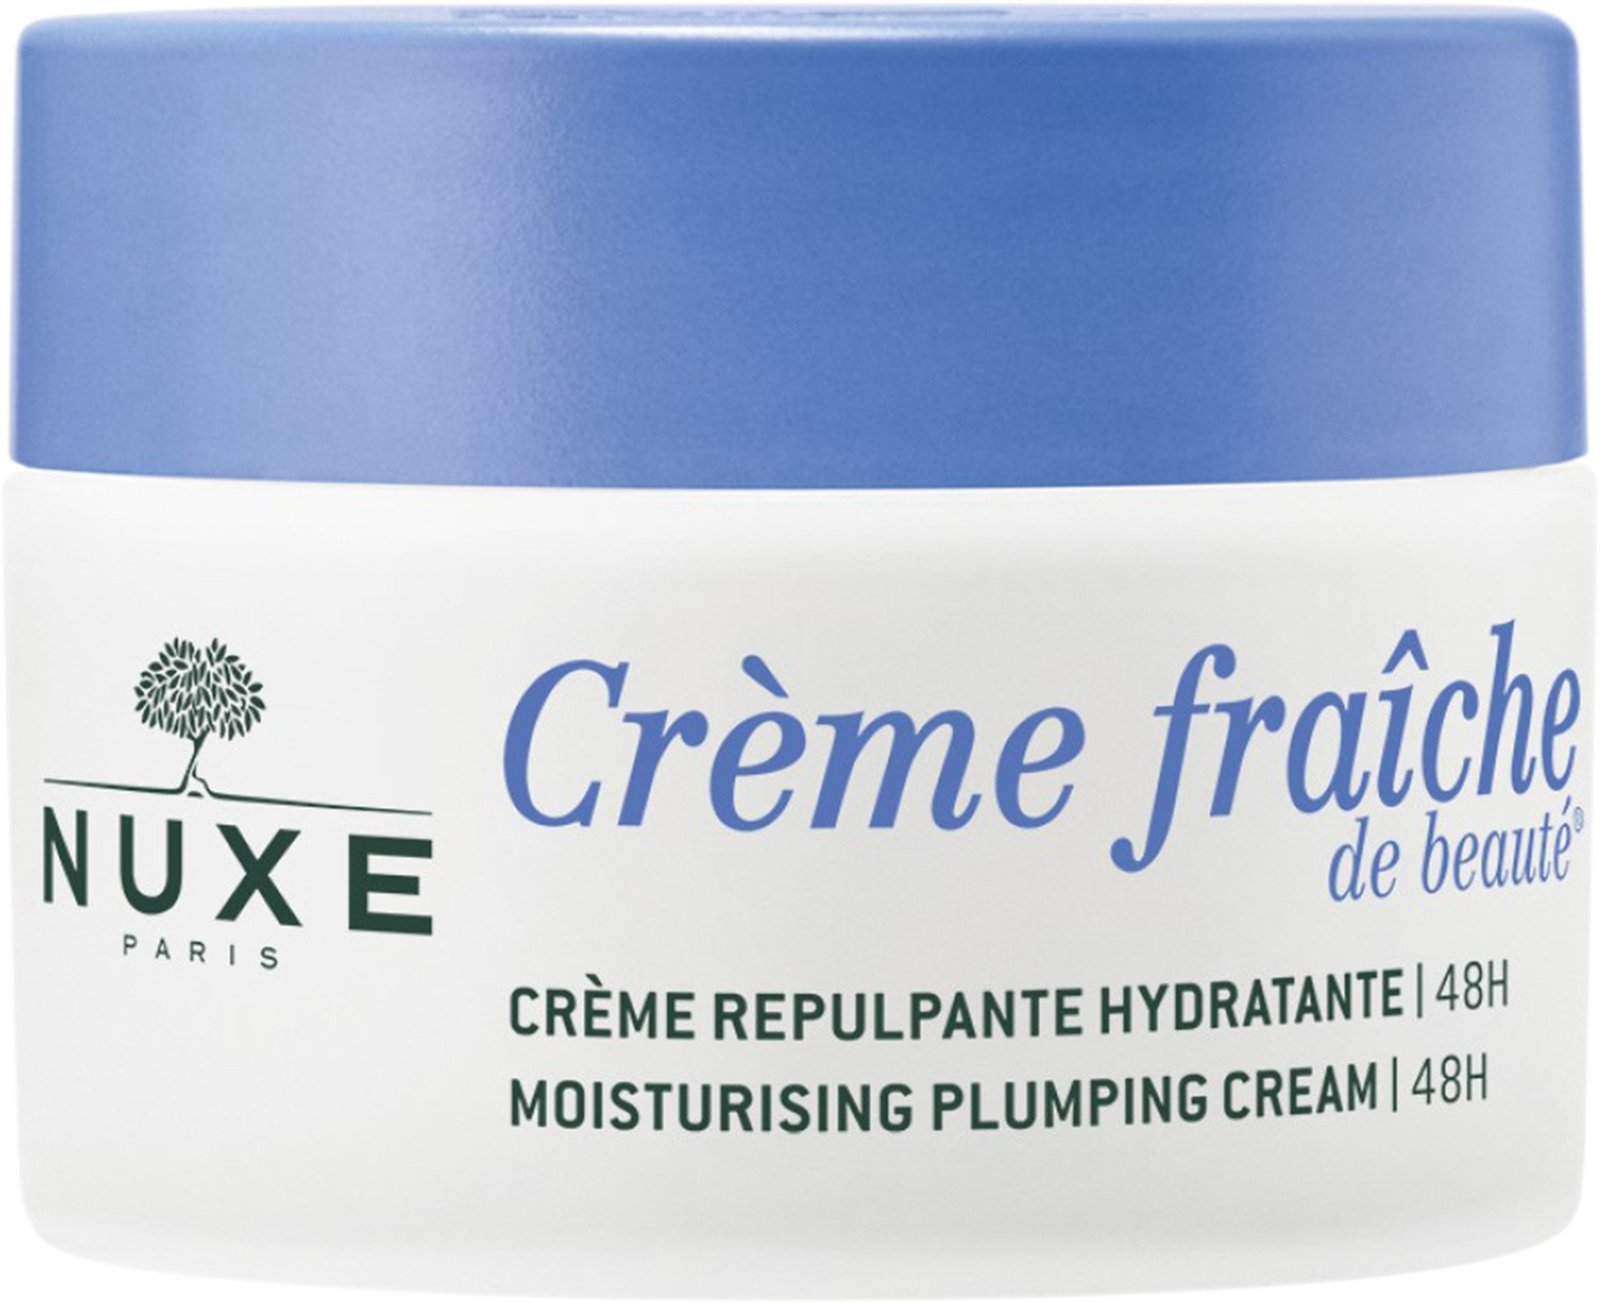 Nuxe Crème Fraiche Moisturising Plumping Cream 48H 50 ml